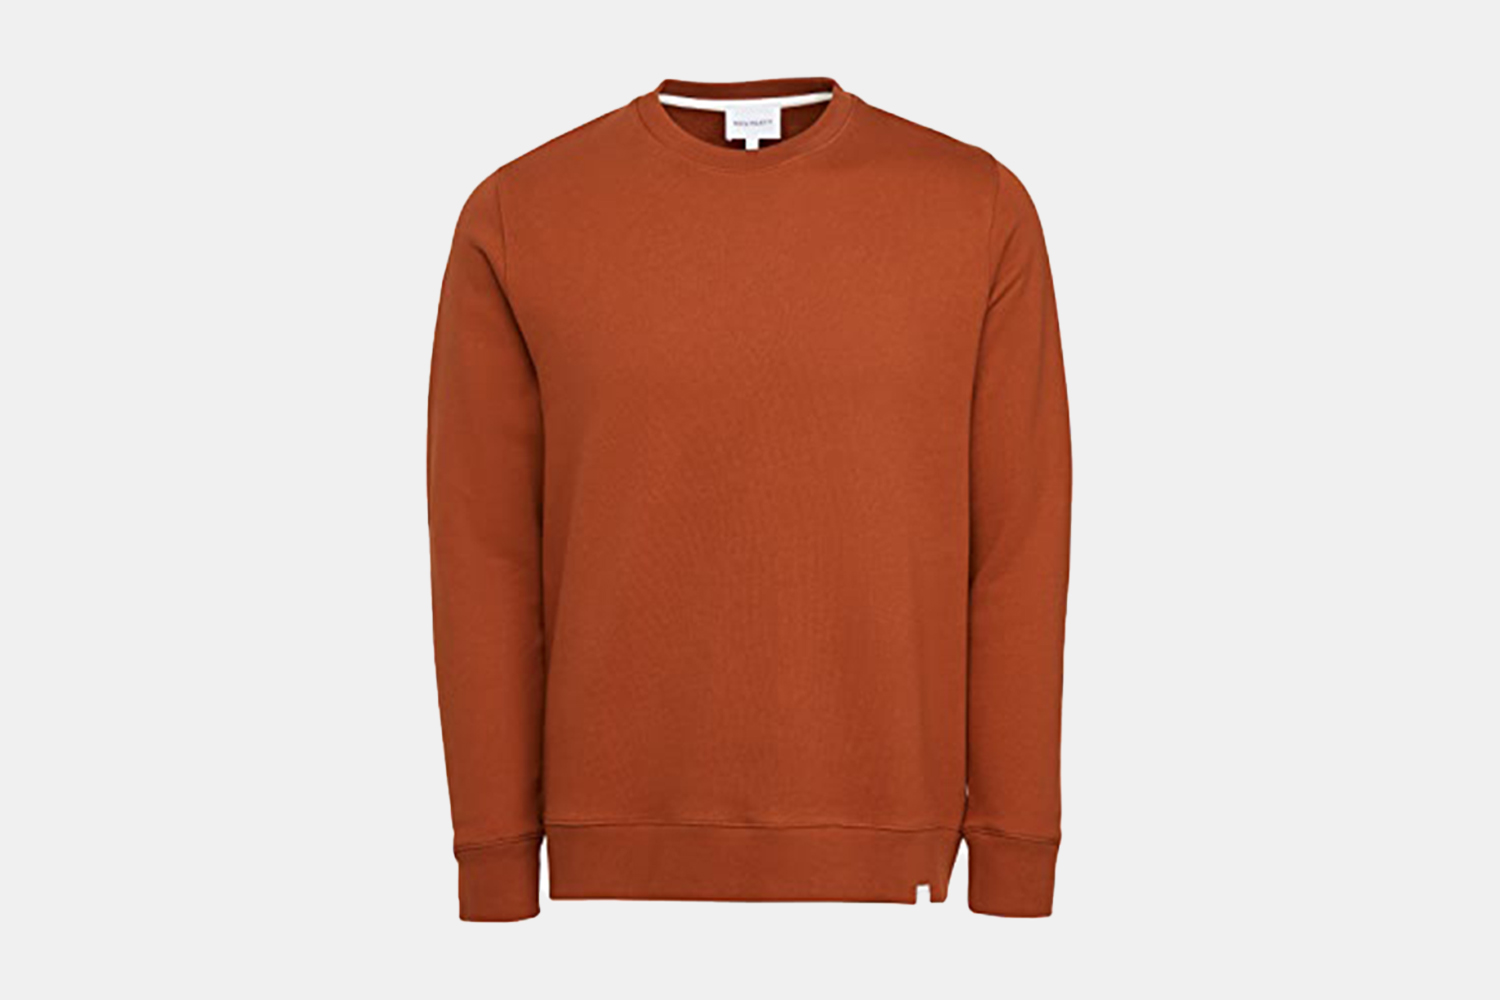 A burnt orange crewneck sweater